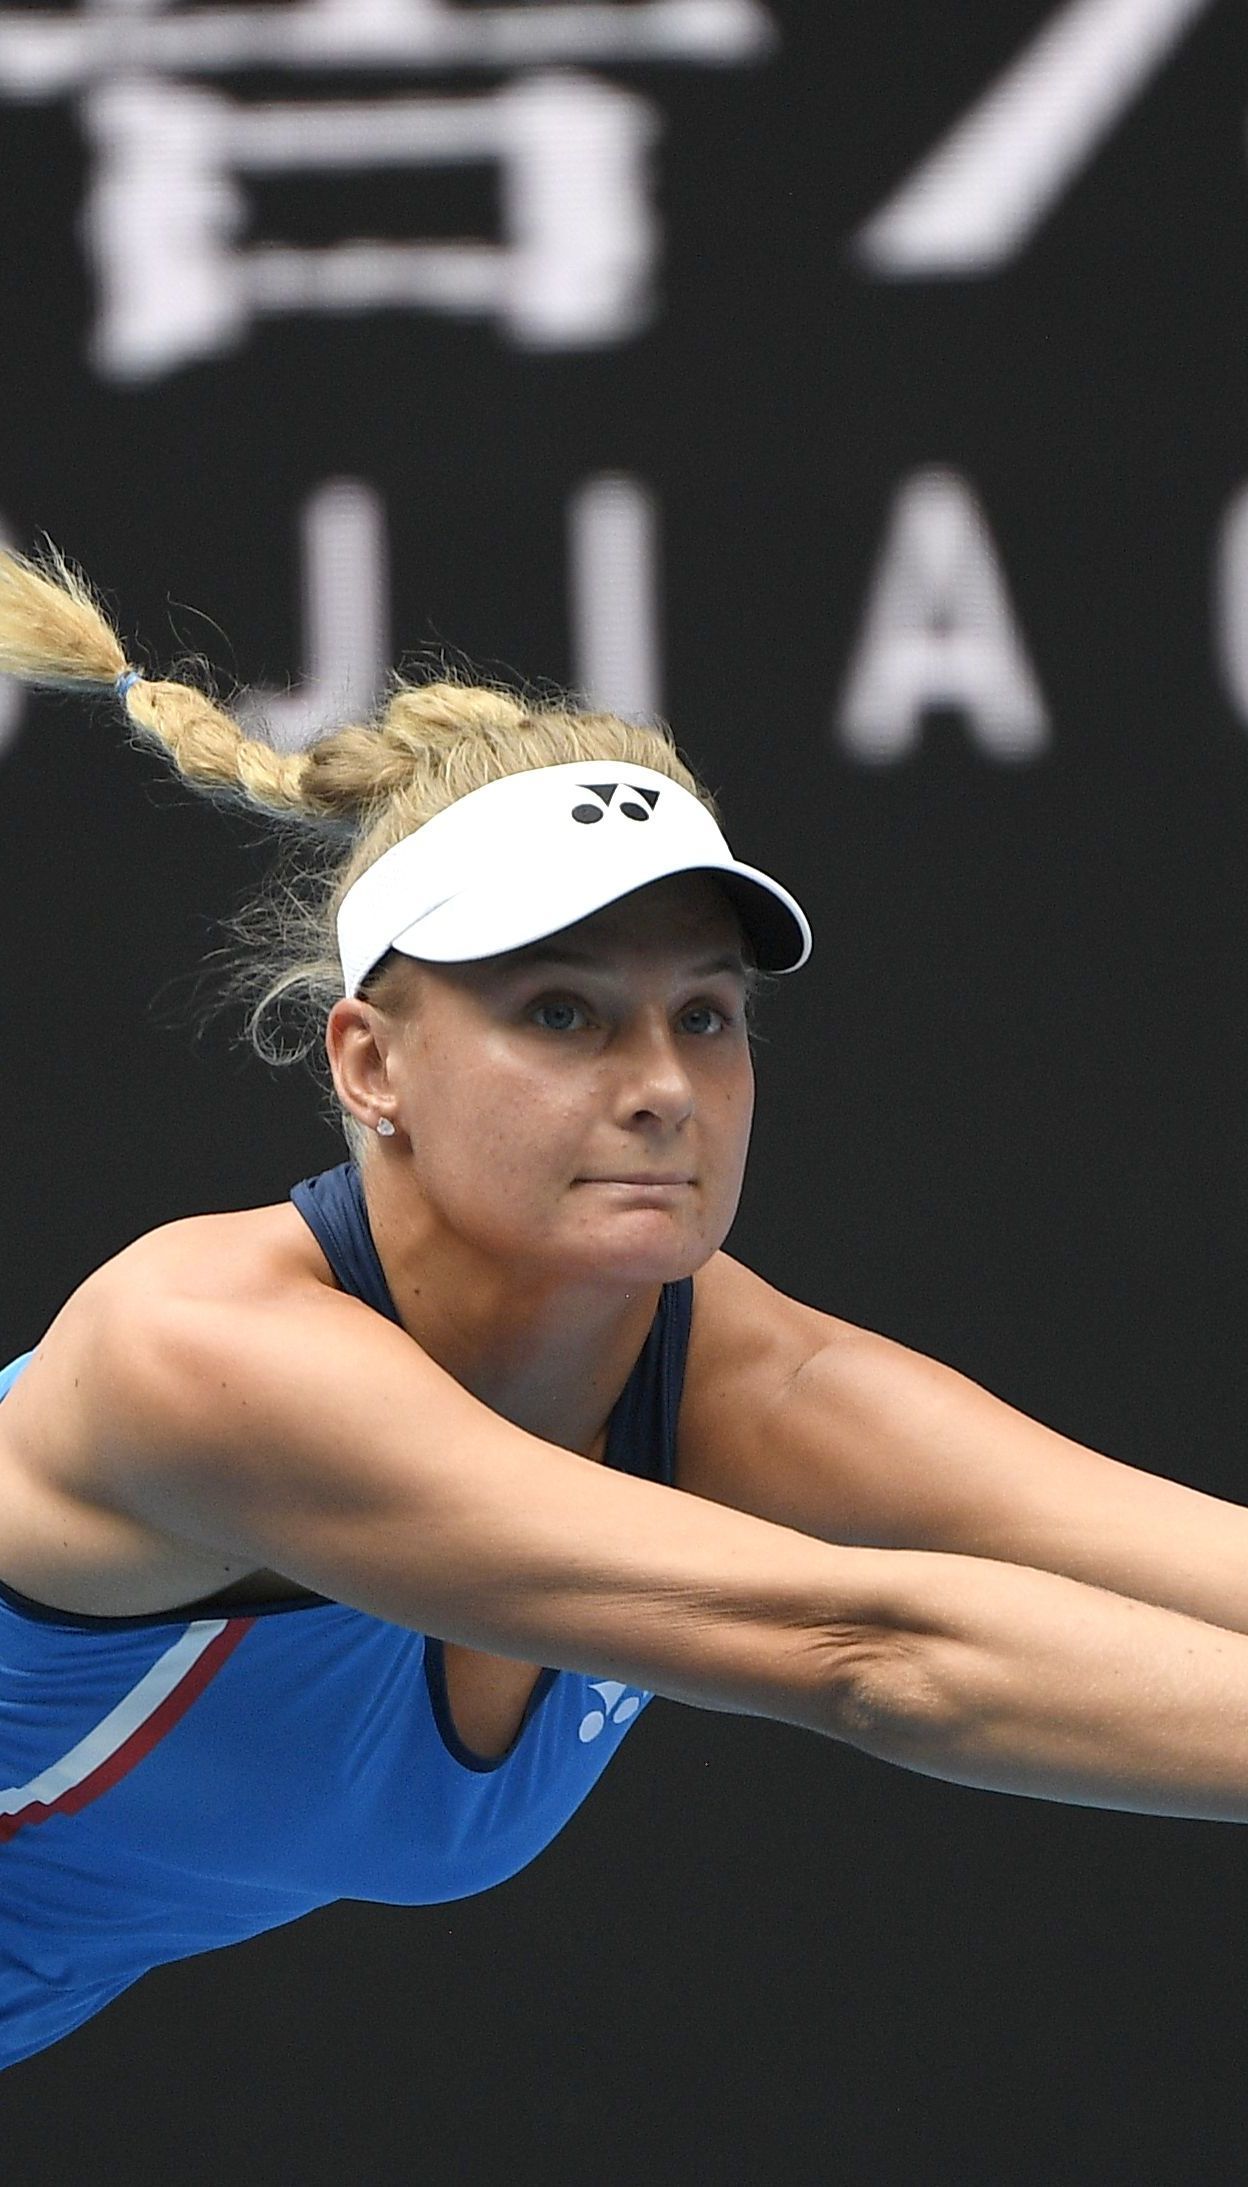 Звездная украинская теннисистка обжаловала в Лозанне свое отстранение из-за допинга